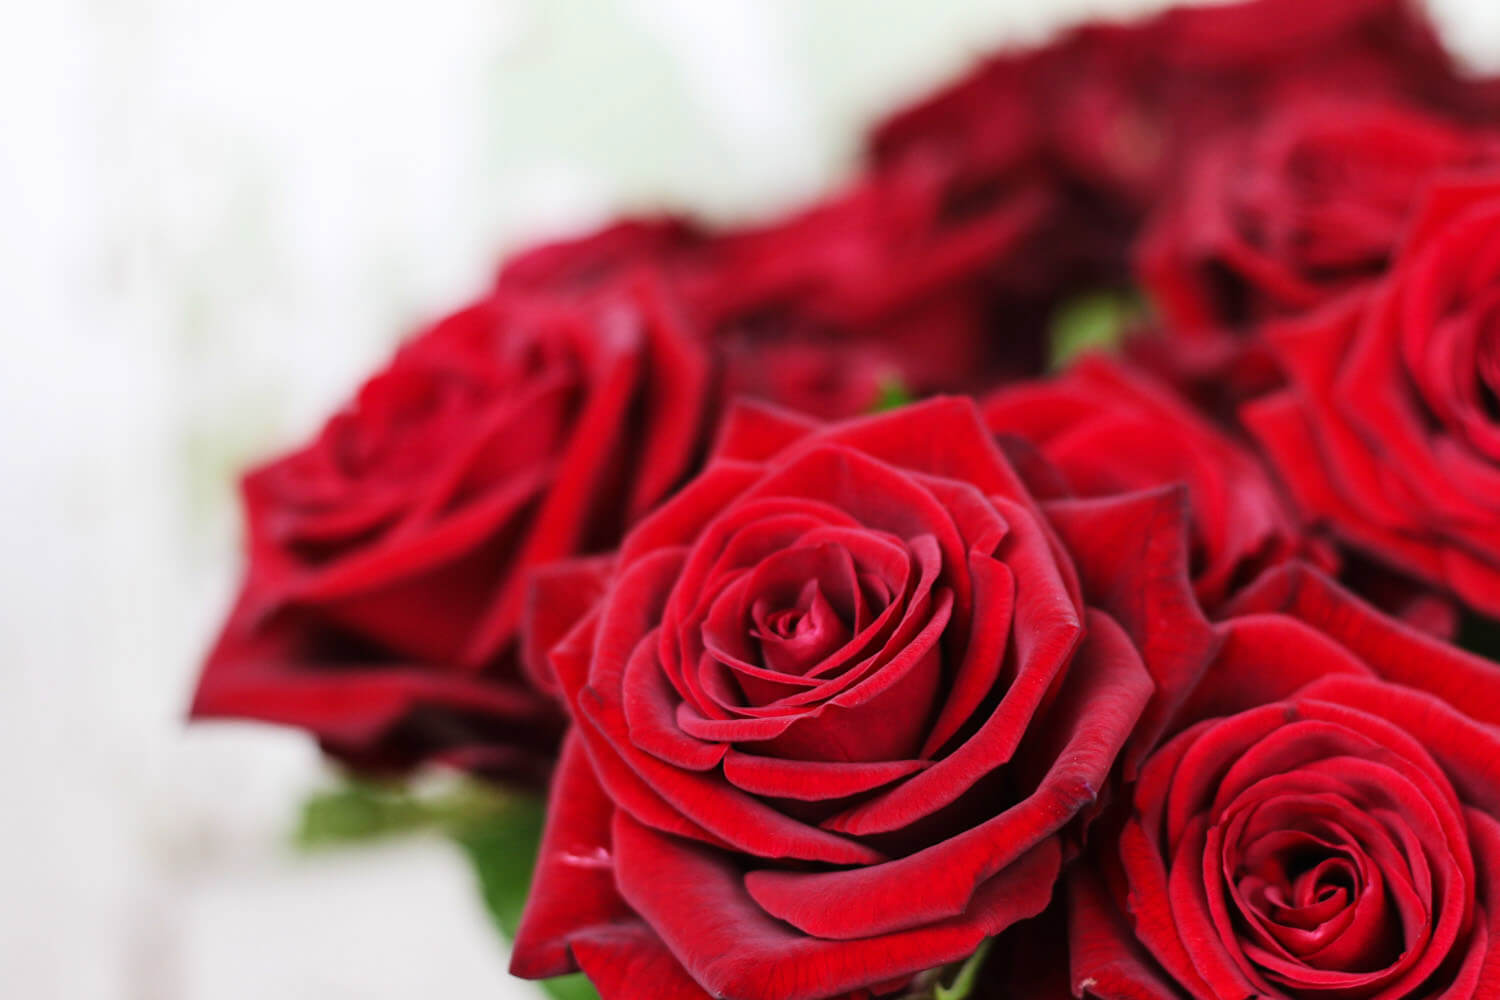 Röda rosor är alltid populära och en storsäljare hos floristerna.